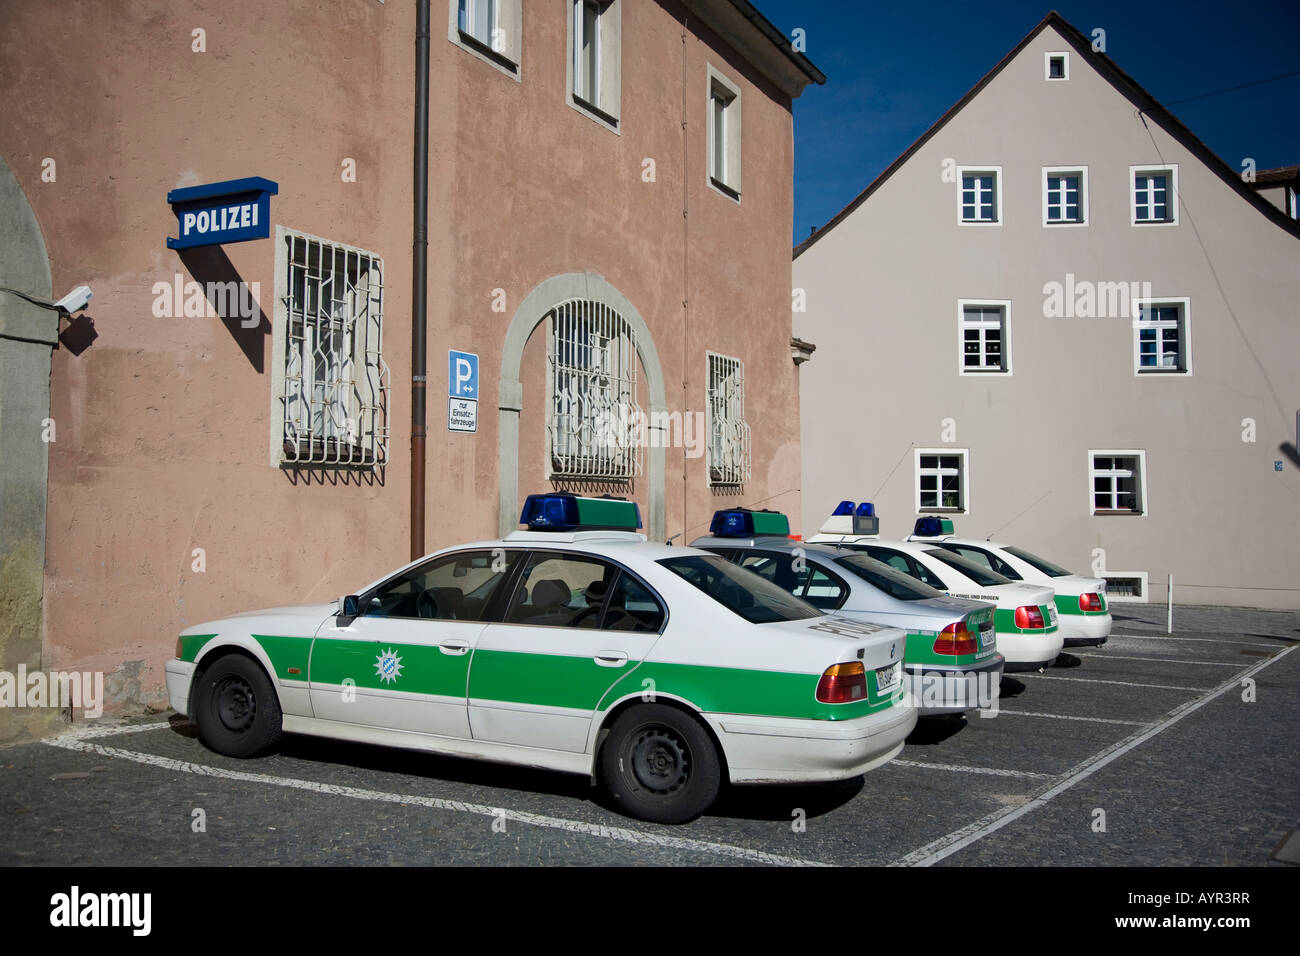 Voitures garées dans un poste de police, Regensburg, Bavière, Allemagne Banque D'Images